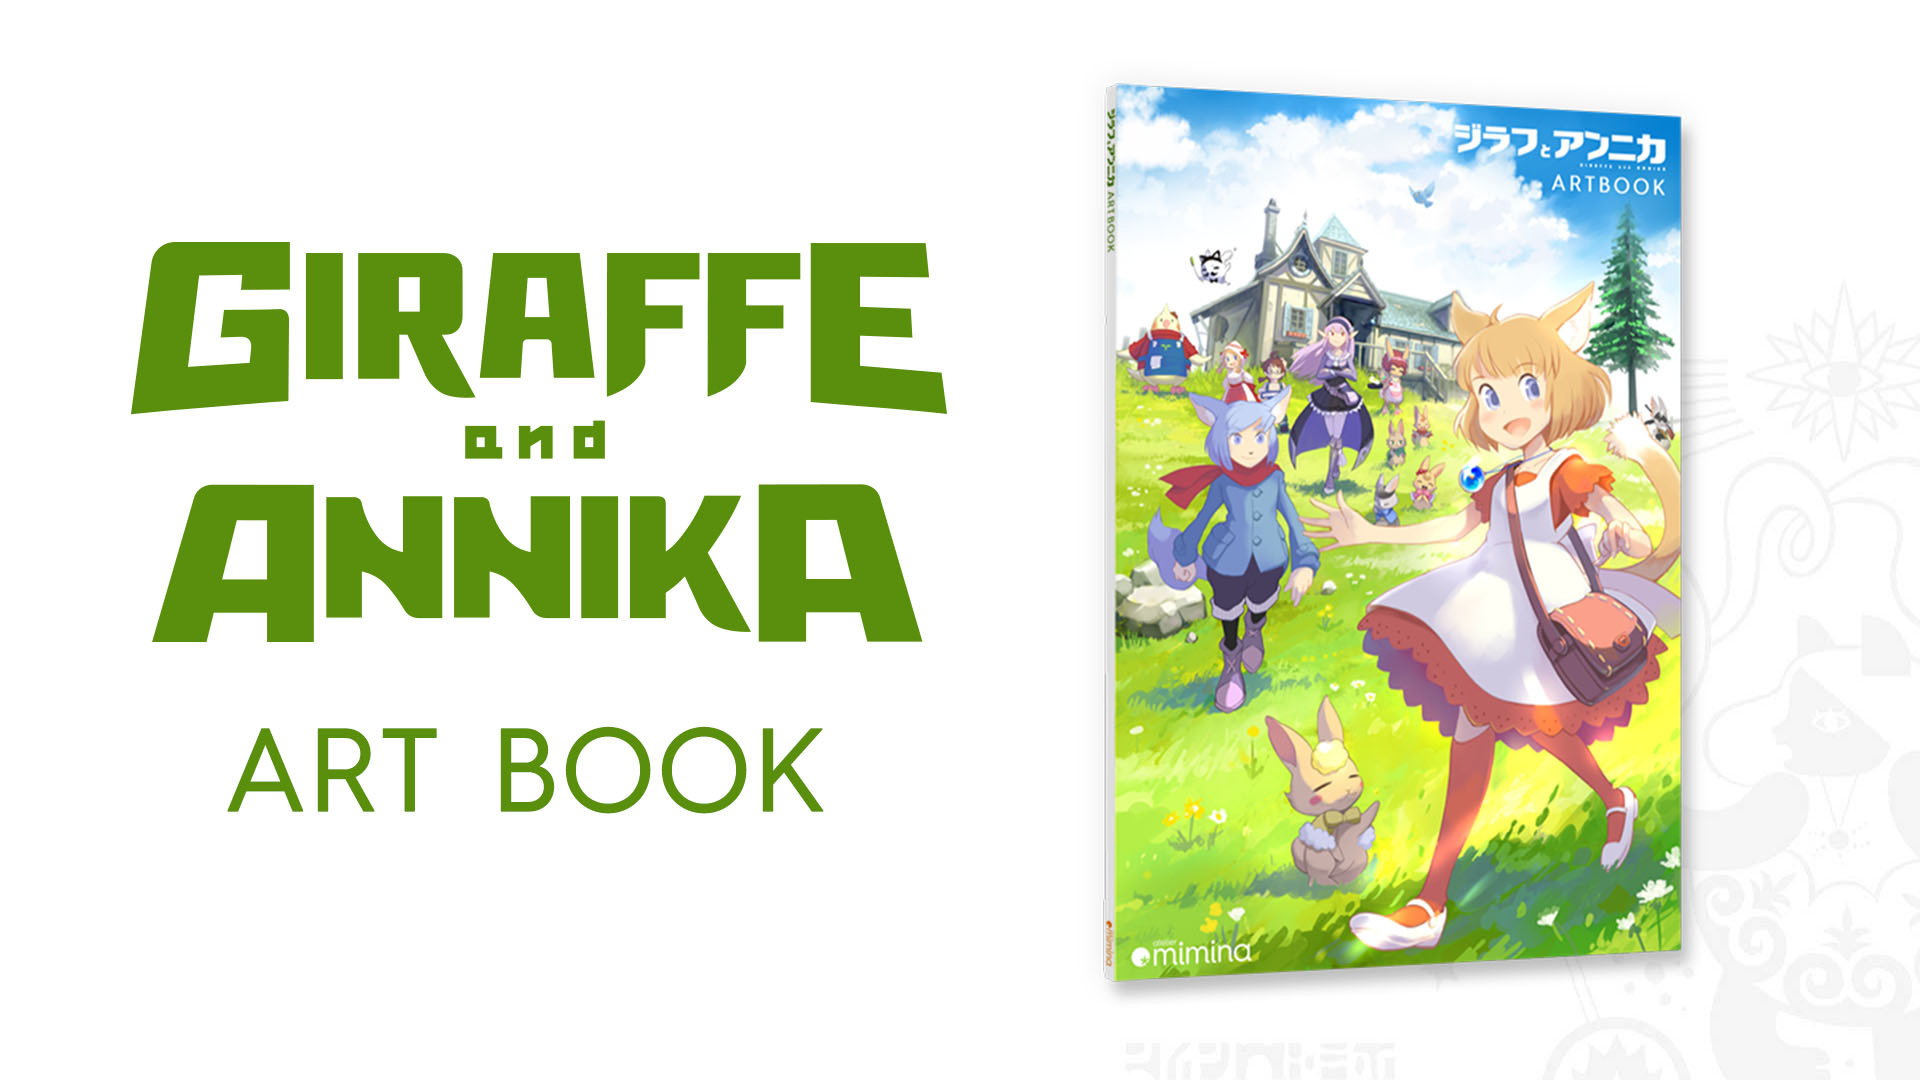 Giraffe and Annika Art Book Featured Screenshot #1